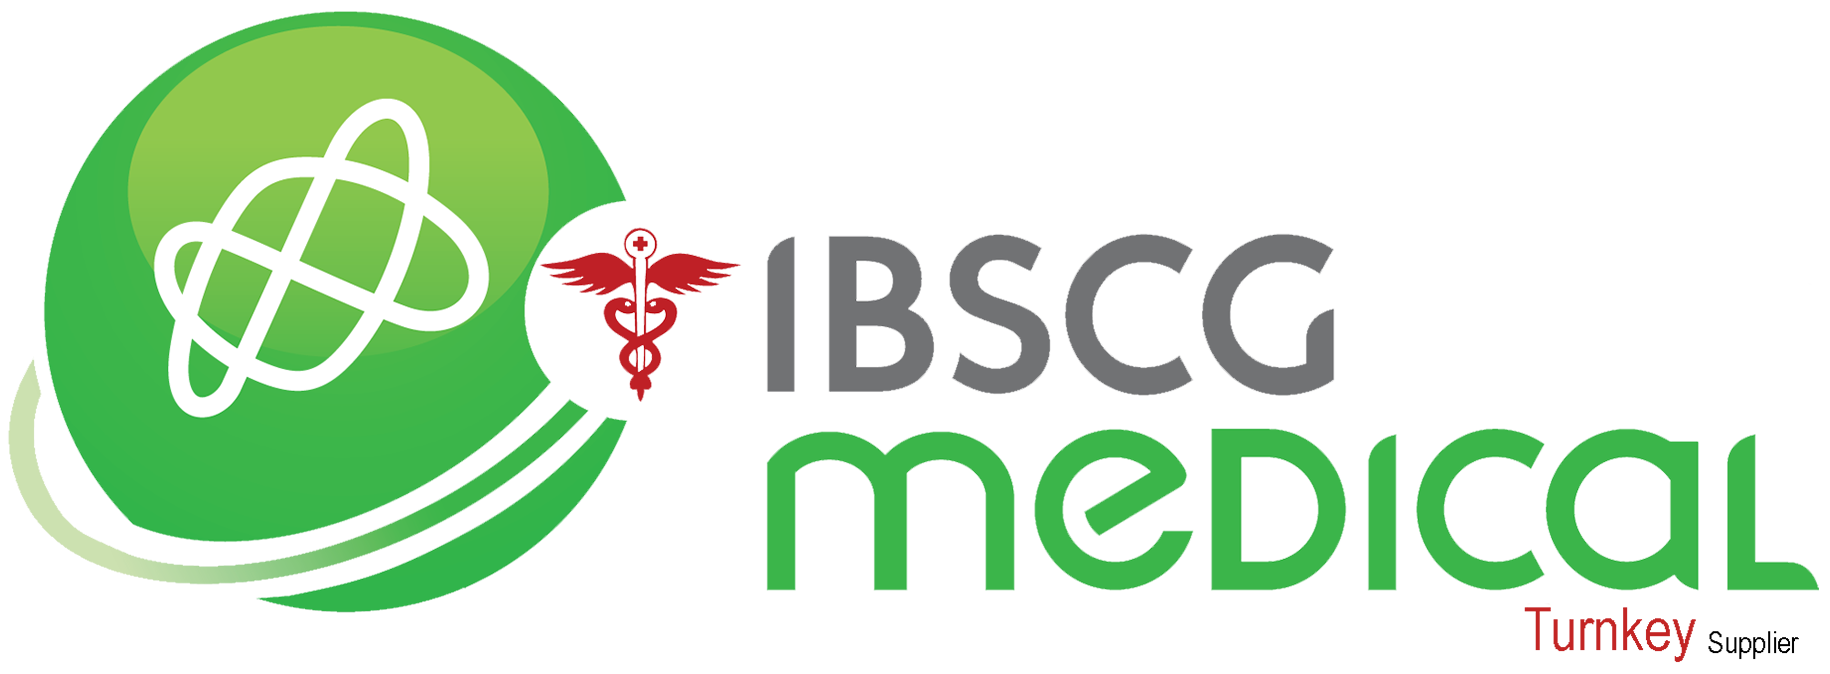 IBSCG Medical